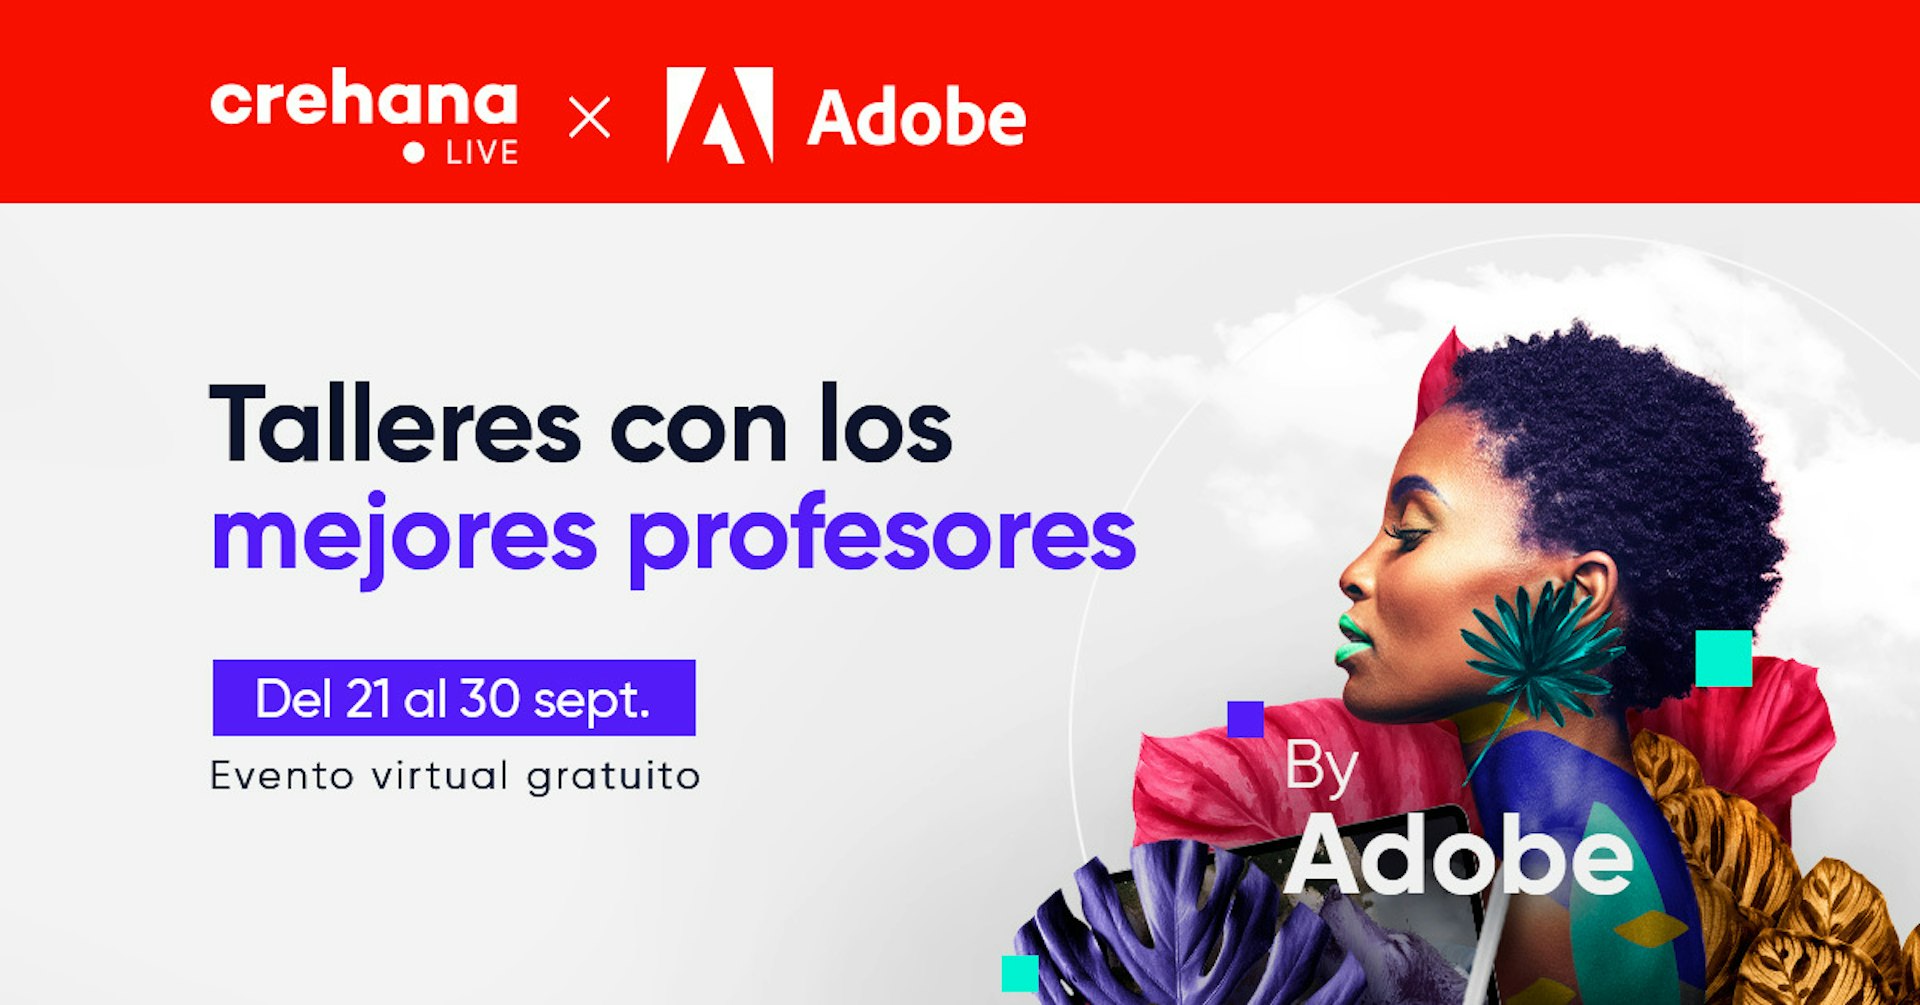 Crehana Live x Adobe: Gana una Licencia Adobe Creative Cloud y una Membresía Premium